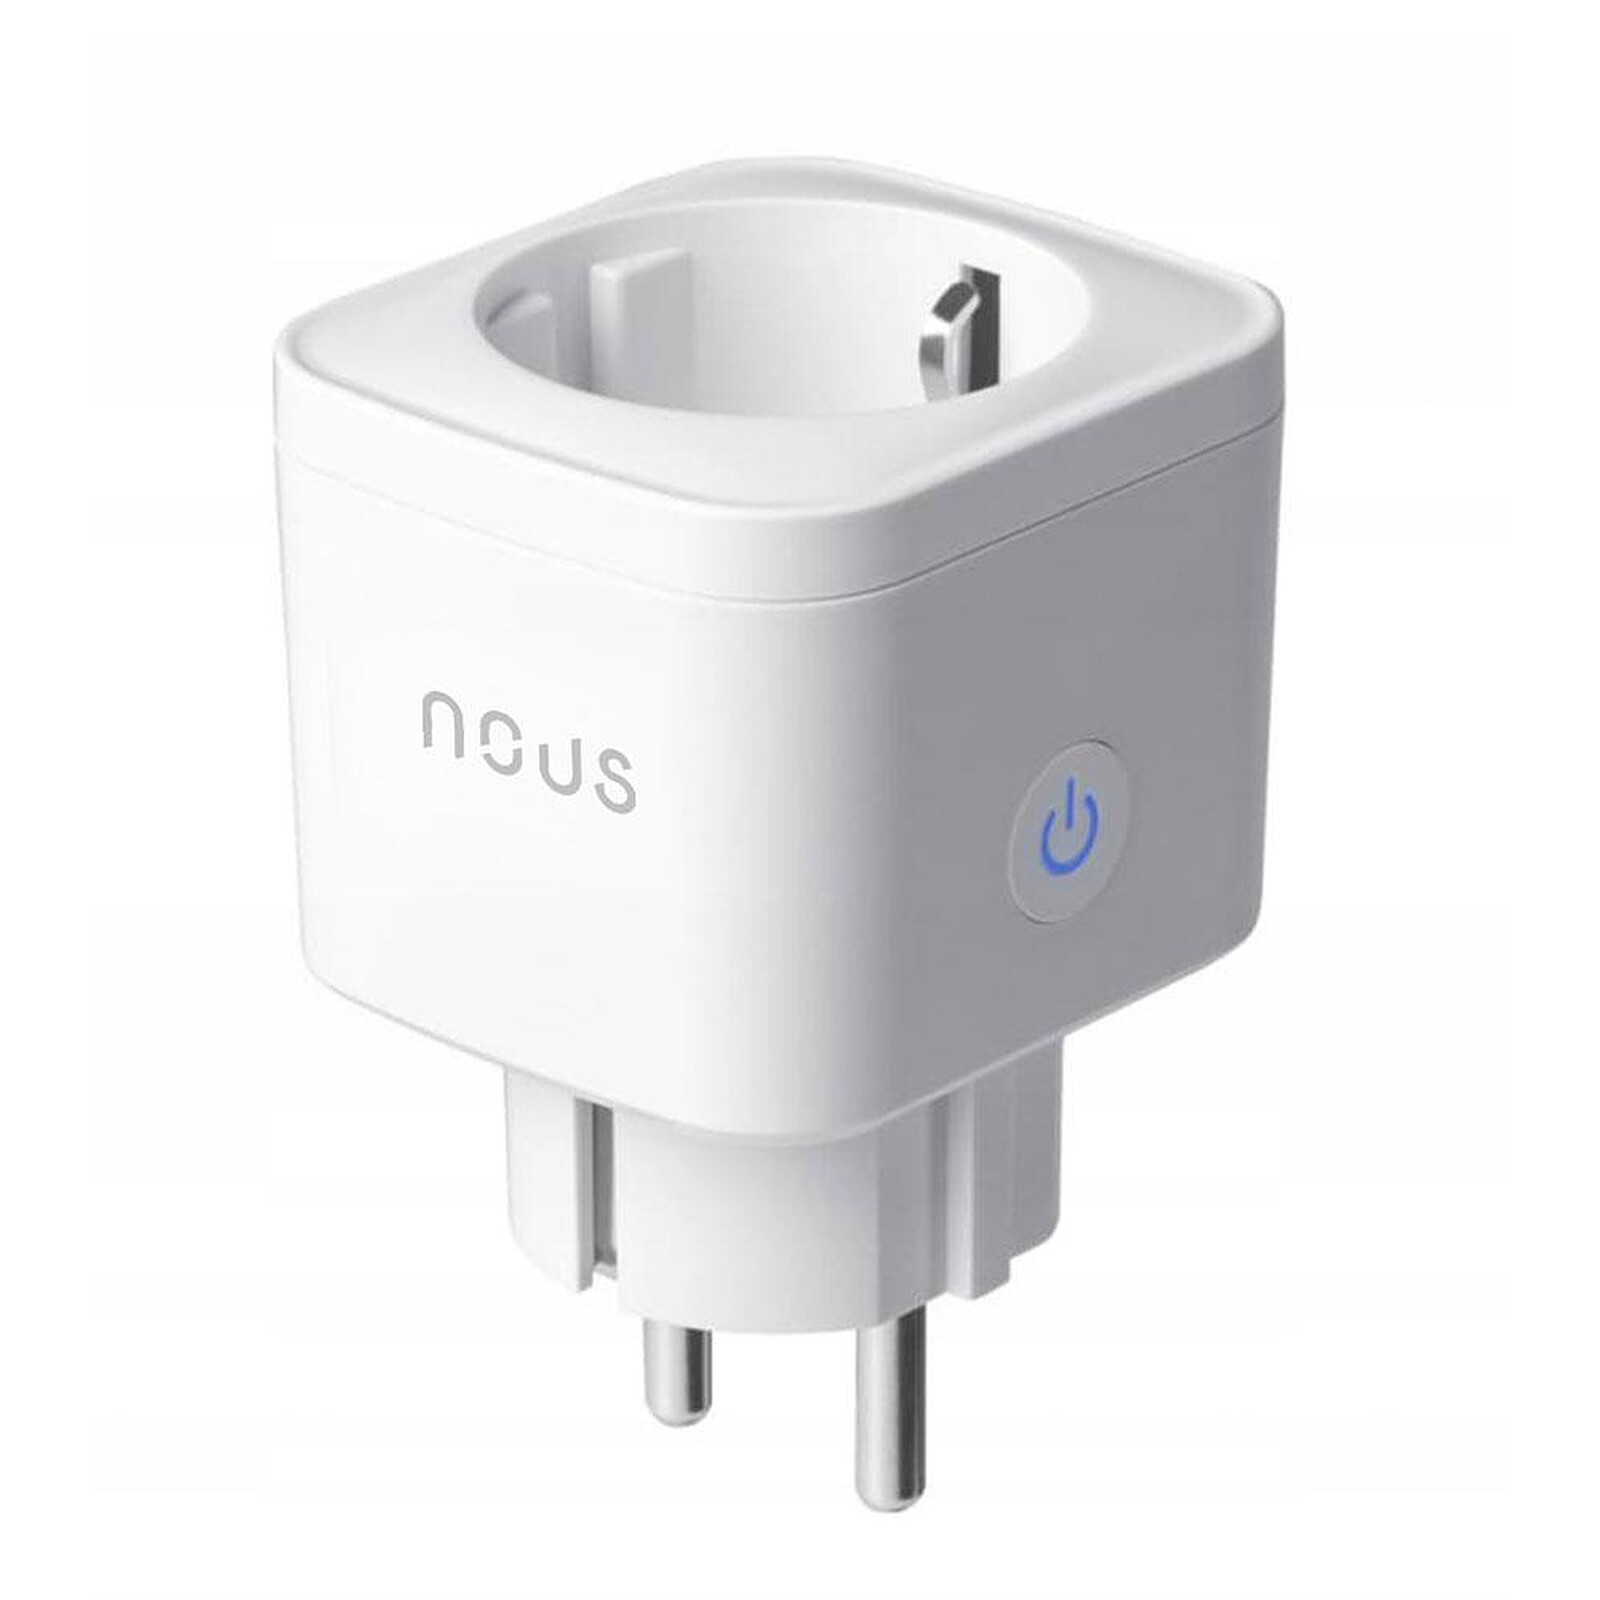 NOUS - Prise Intelligente Wifi - NOUS-A7 - NOUS - Prise connectée - LDLC